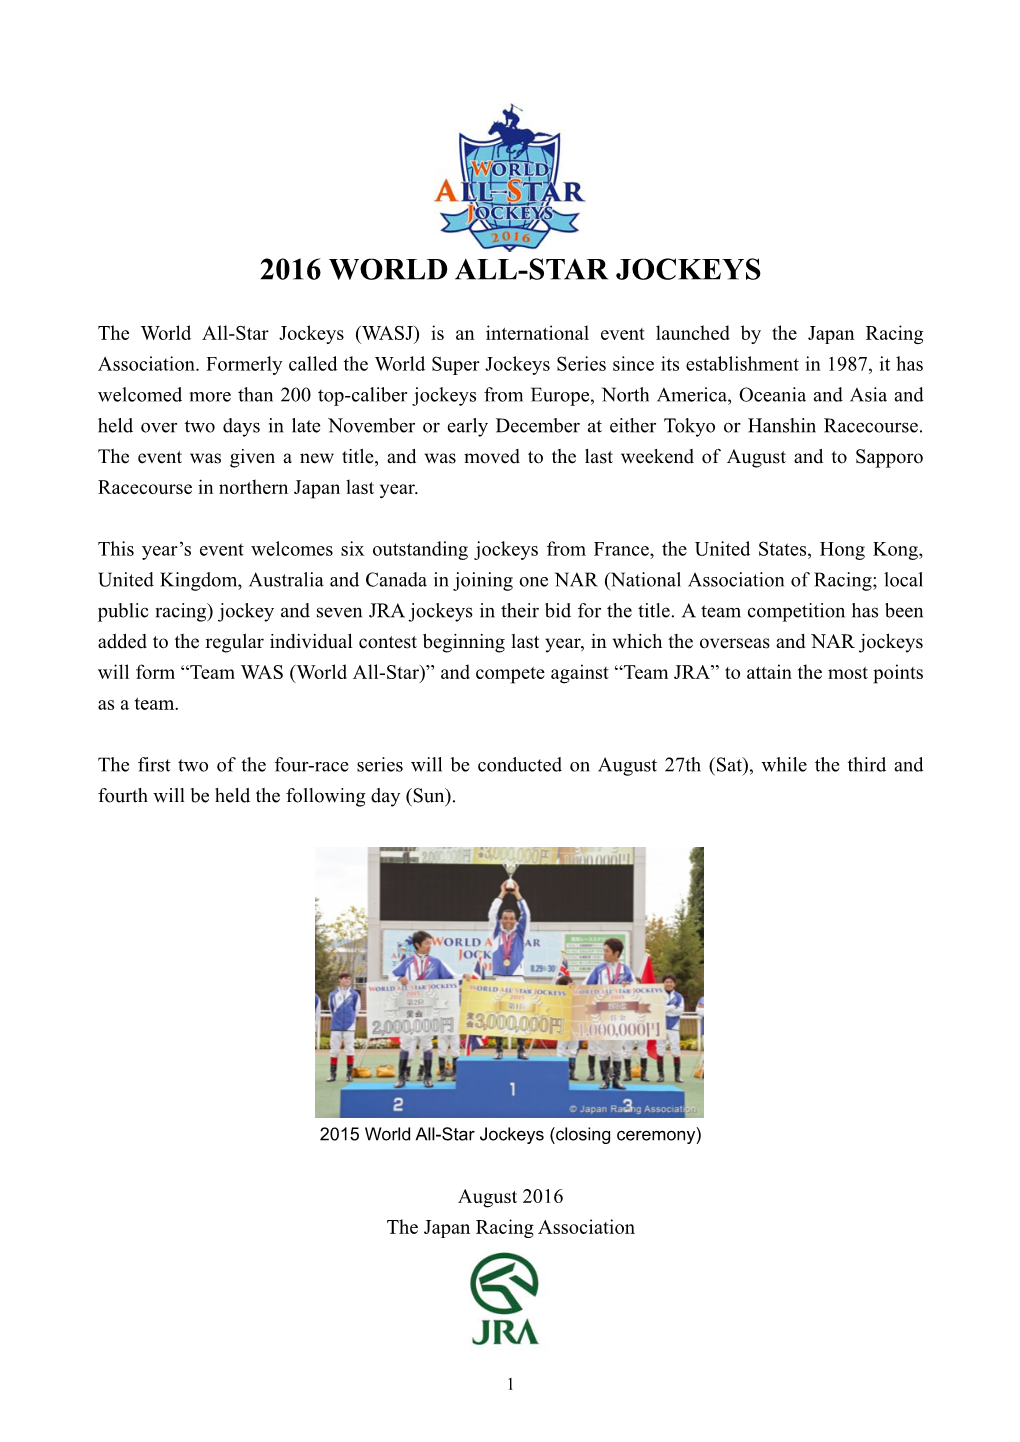 2016 World All-Star Jockeys